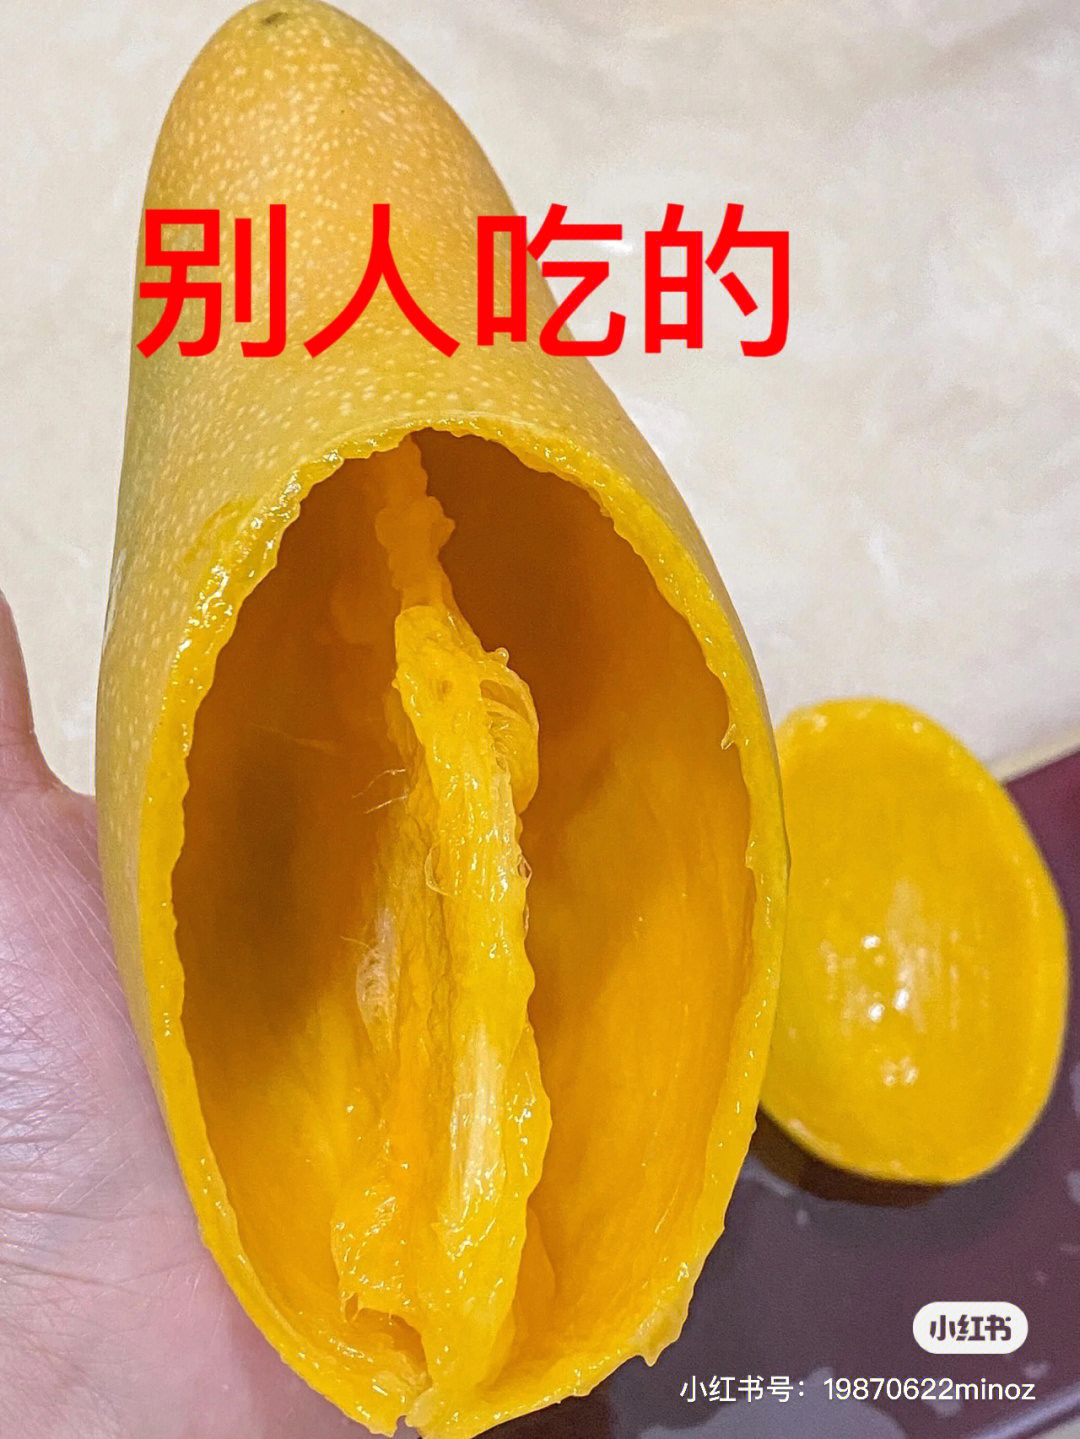 吃芒果身上会长红疙瘩图片